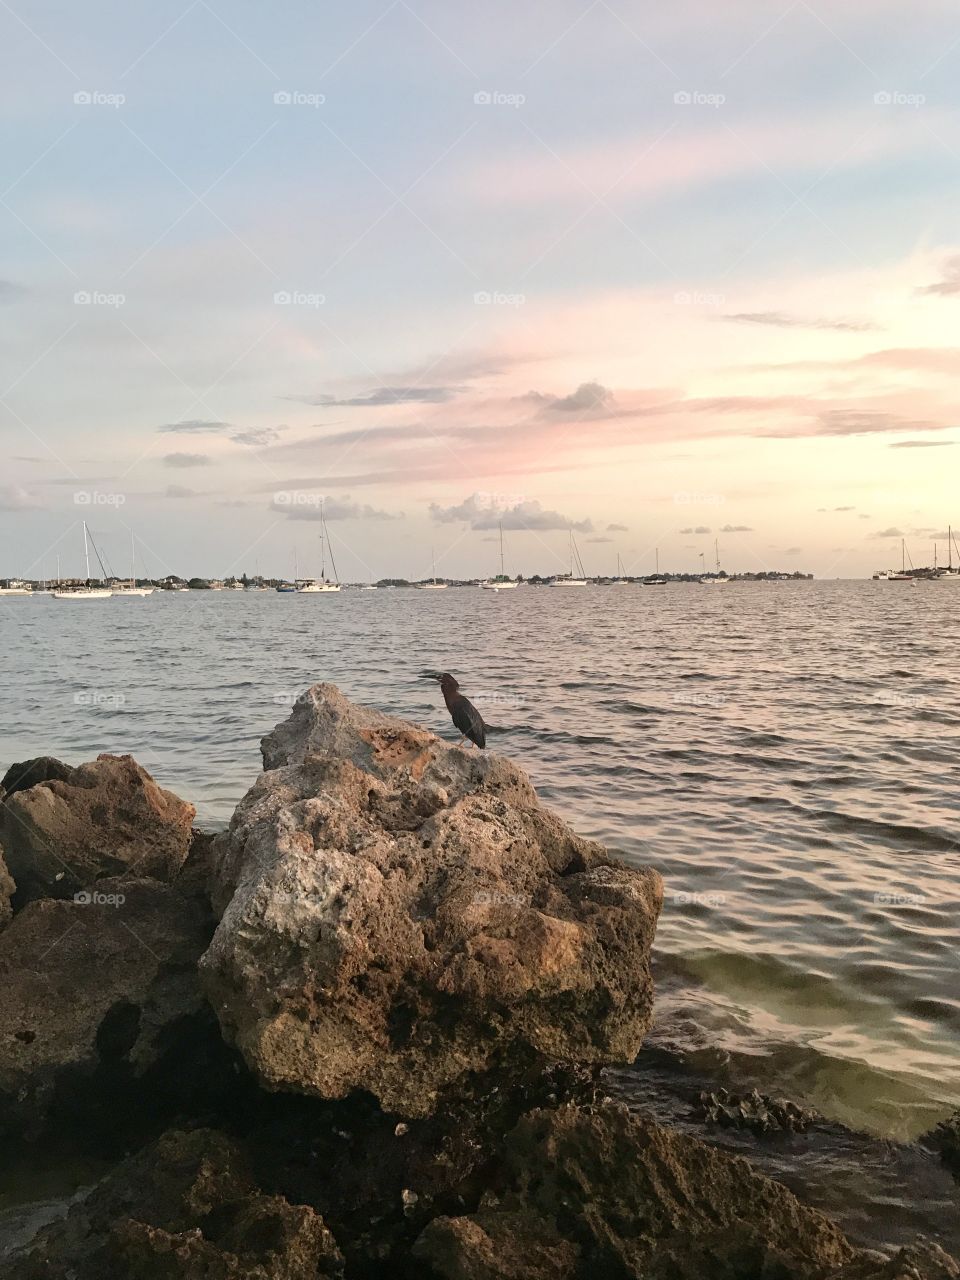 Sarasota bay bird